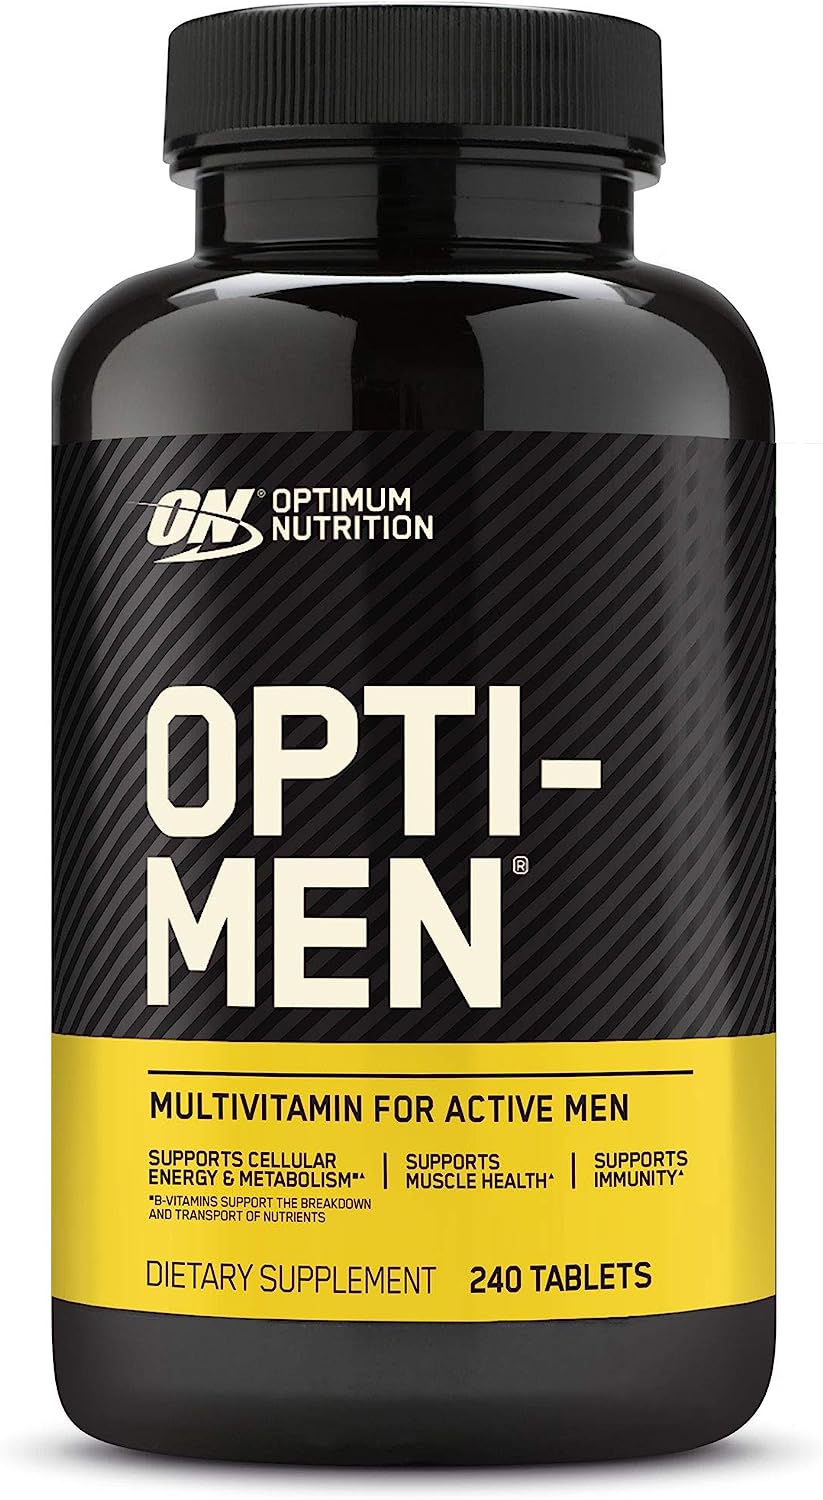 قرص اپتیمن مولتی ویتامین اپتیموم اورجینال 240 عددی مدل Optimum Nutrition Opti-men - ارسال 10 الی 15 روز کاری